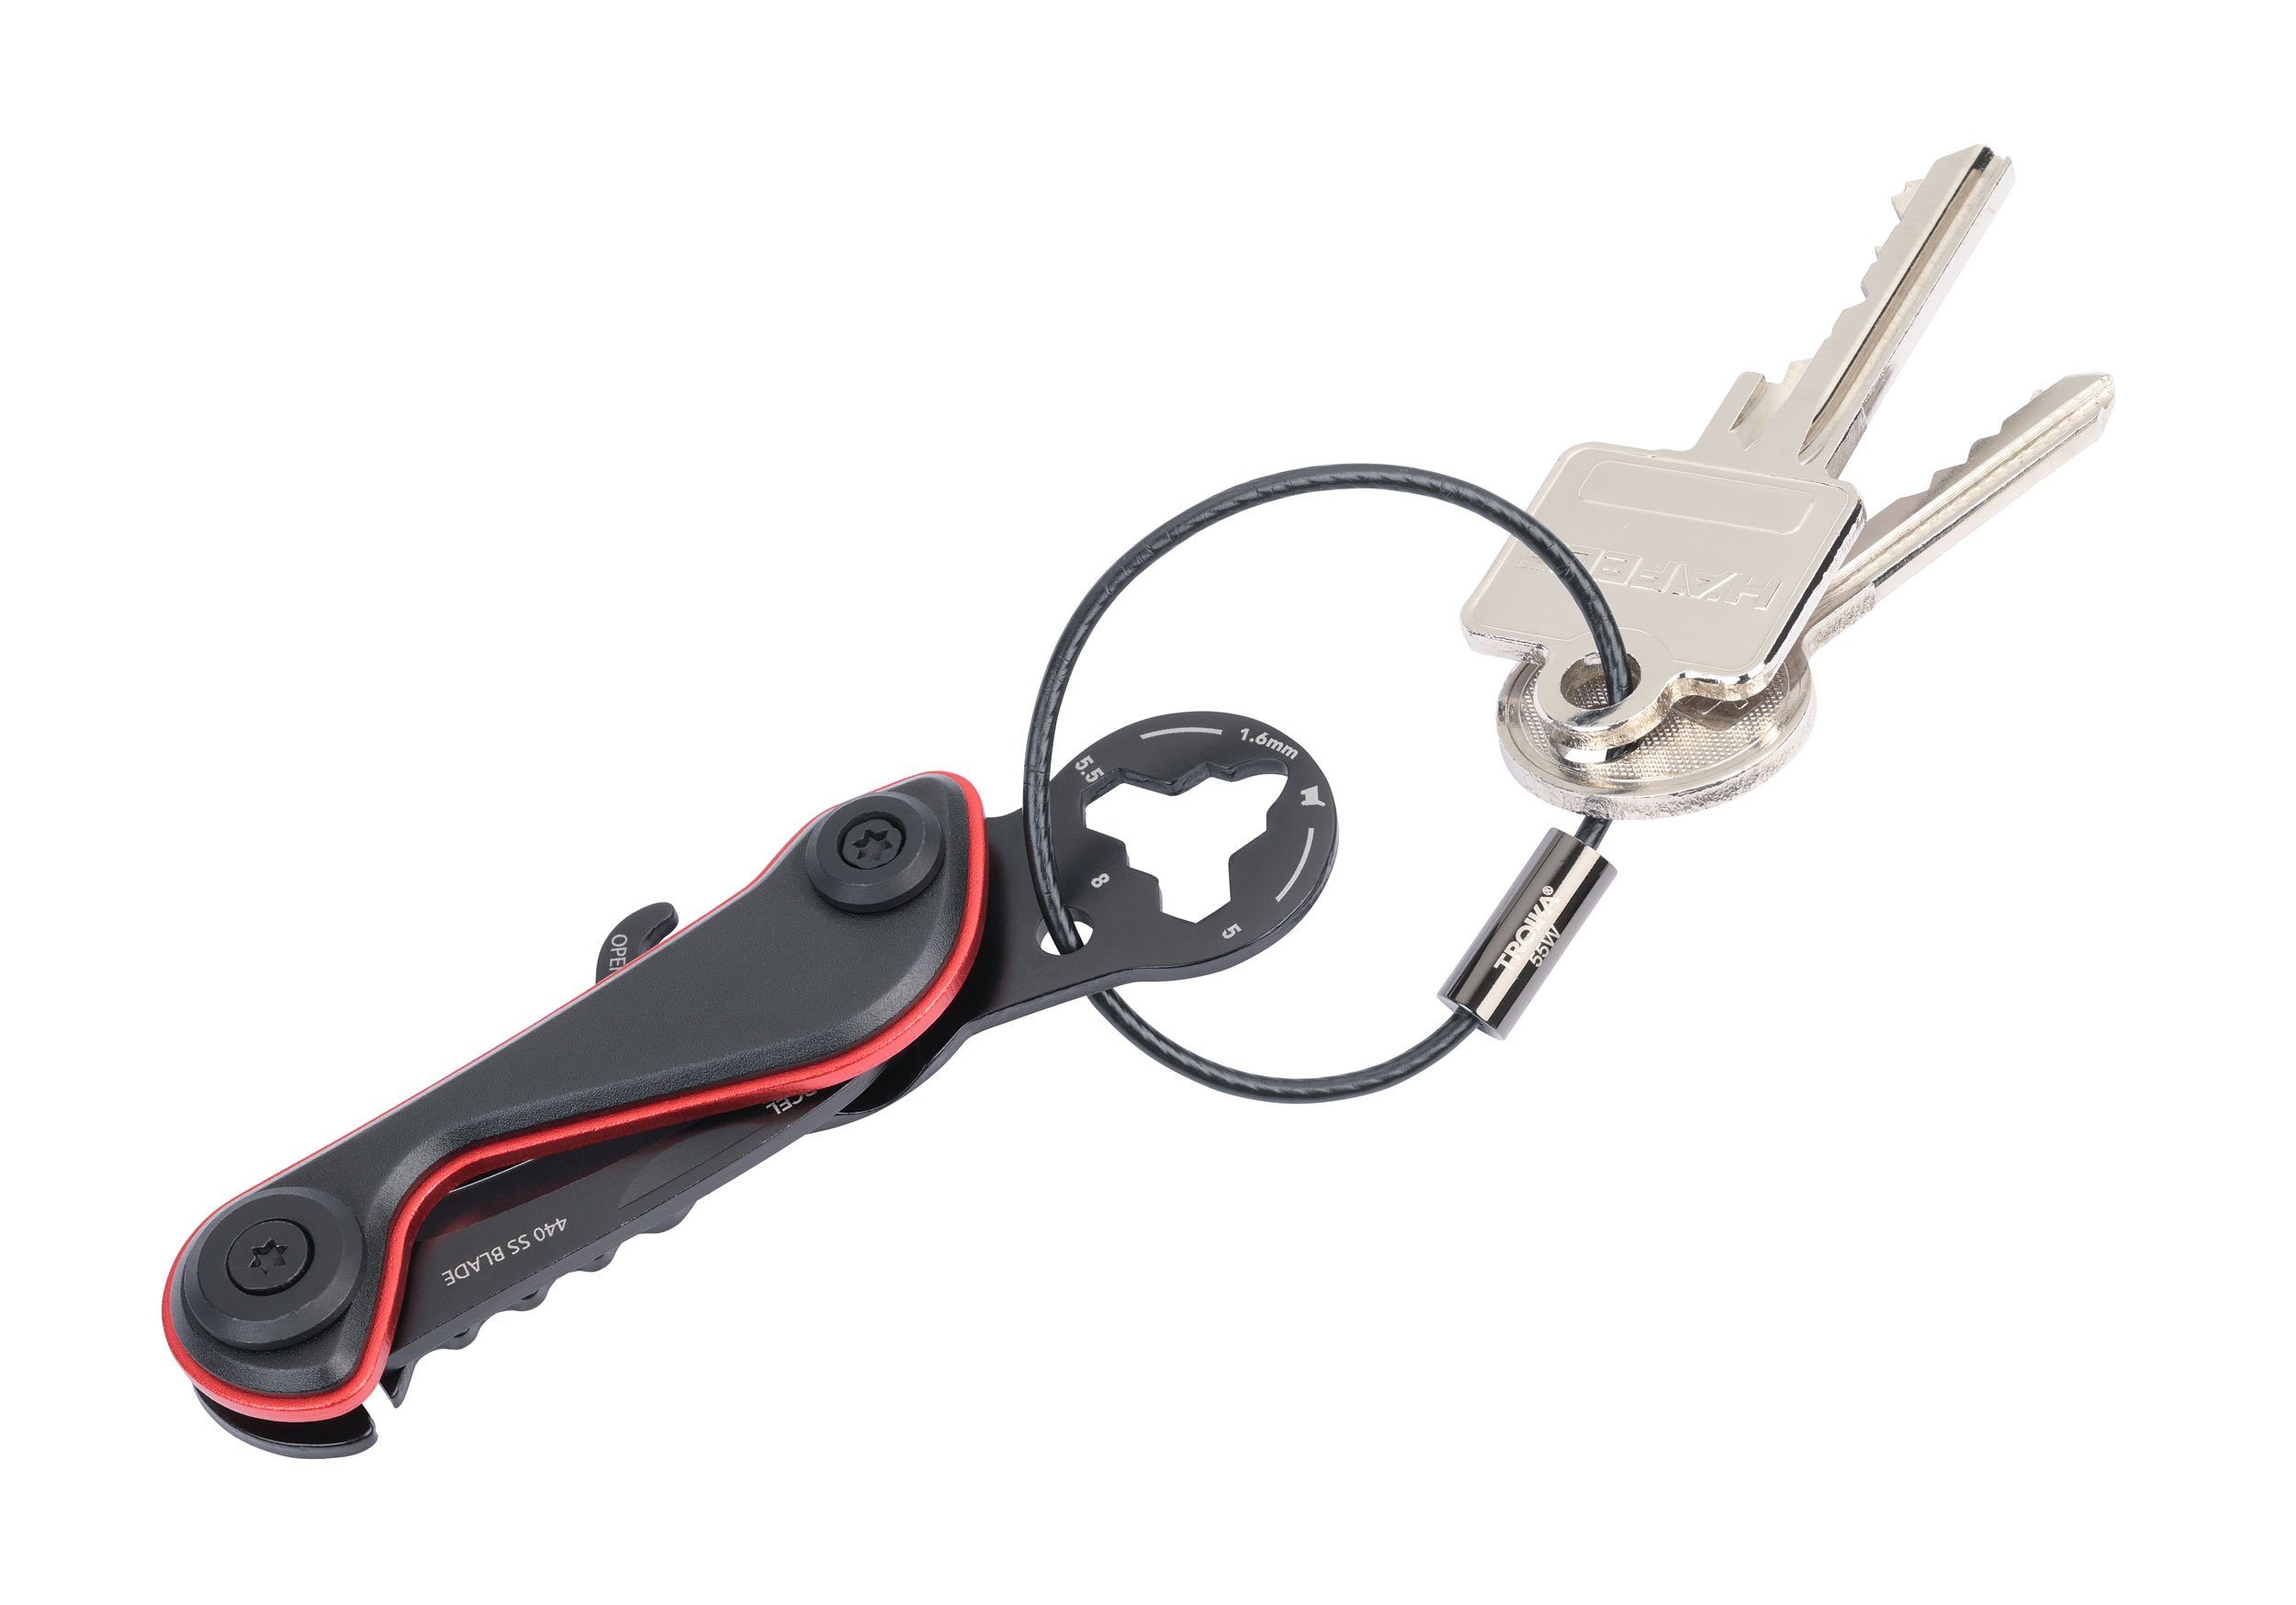 TROIKA Schlüsselanhänger Mini-Werkzeug mit 9 Funktionen - Multitool -  PARCEL CUT & CART, Super praktisch für viele